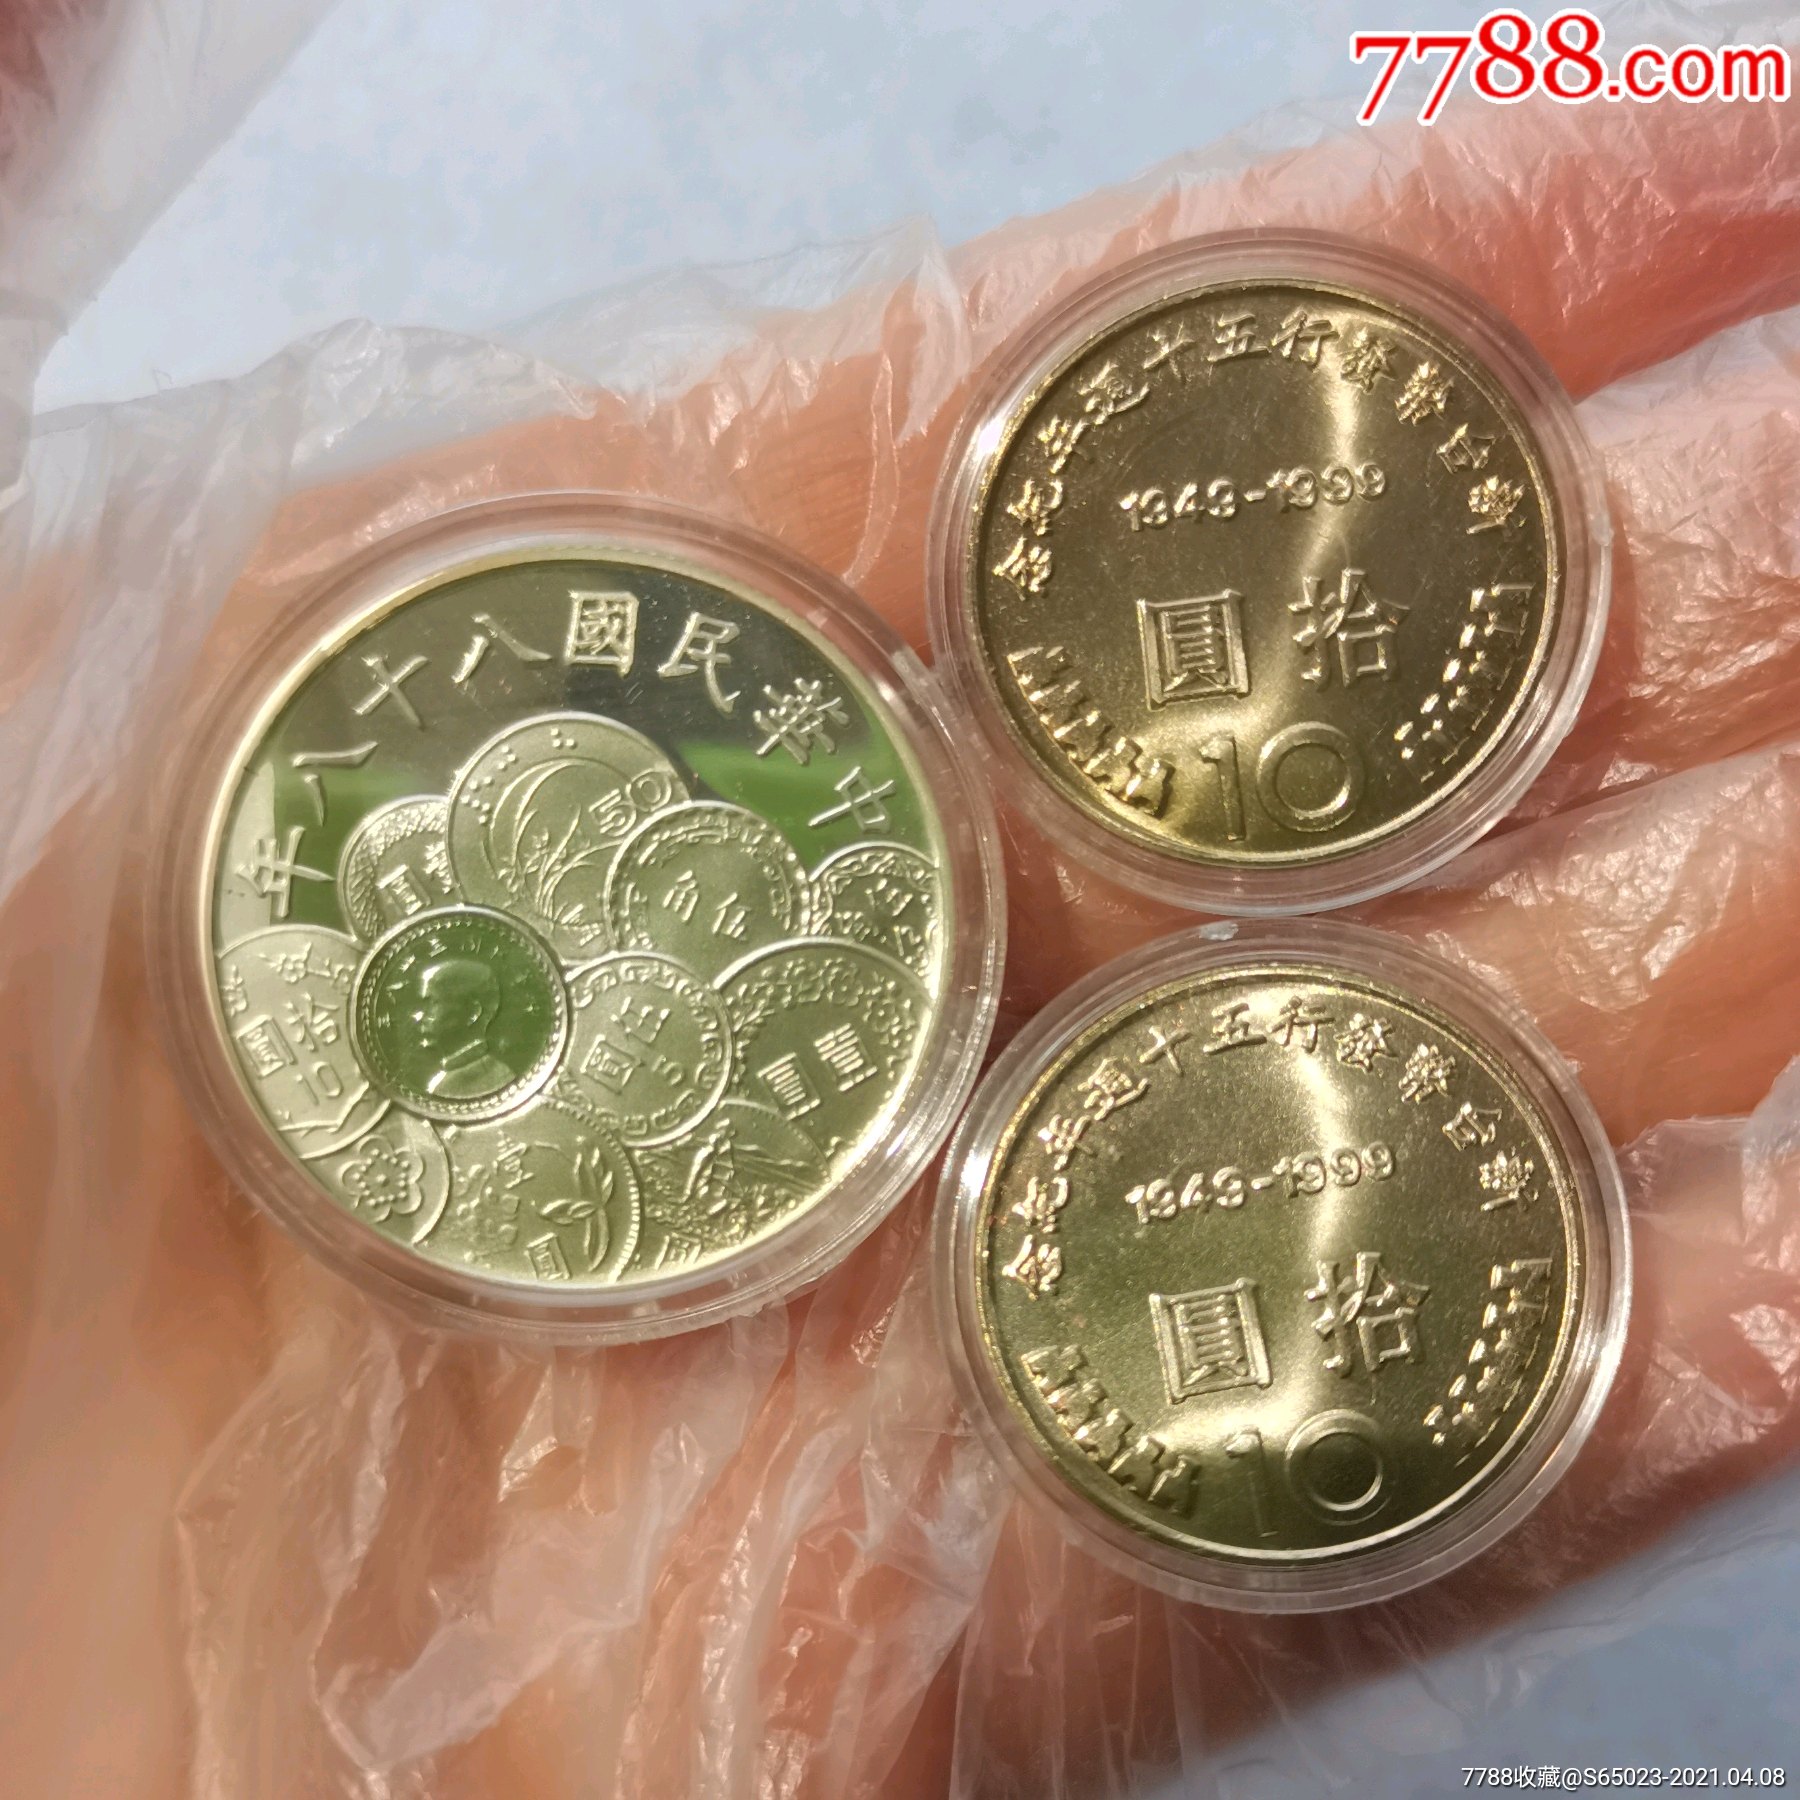 中国台湾省新台币发行50周年纪念银币及流通十元硬币/一套3枚/全新品